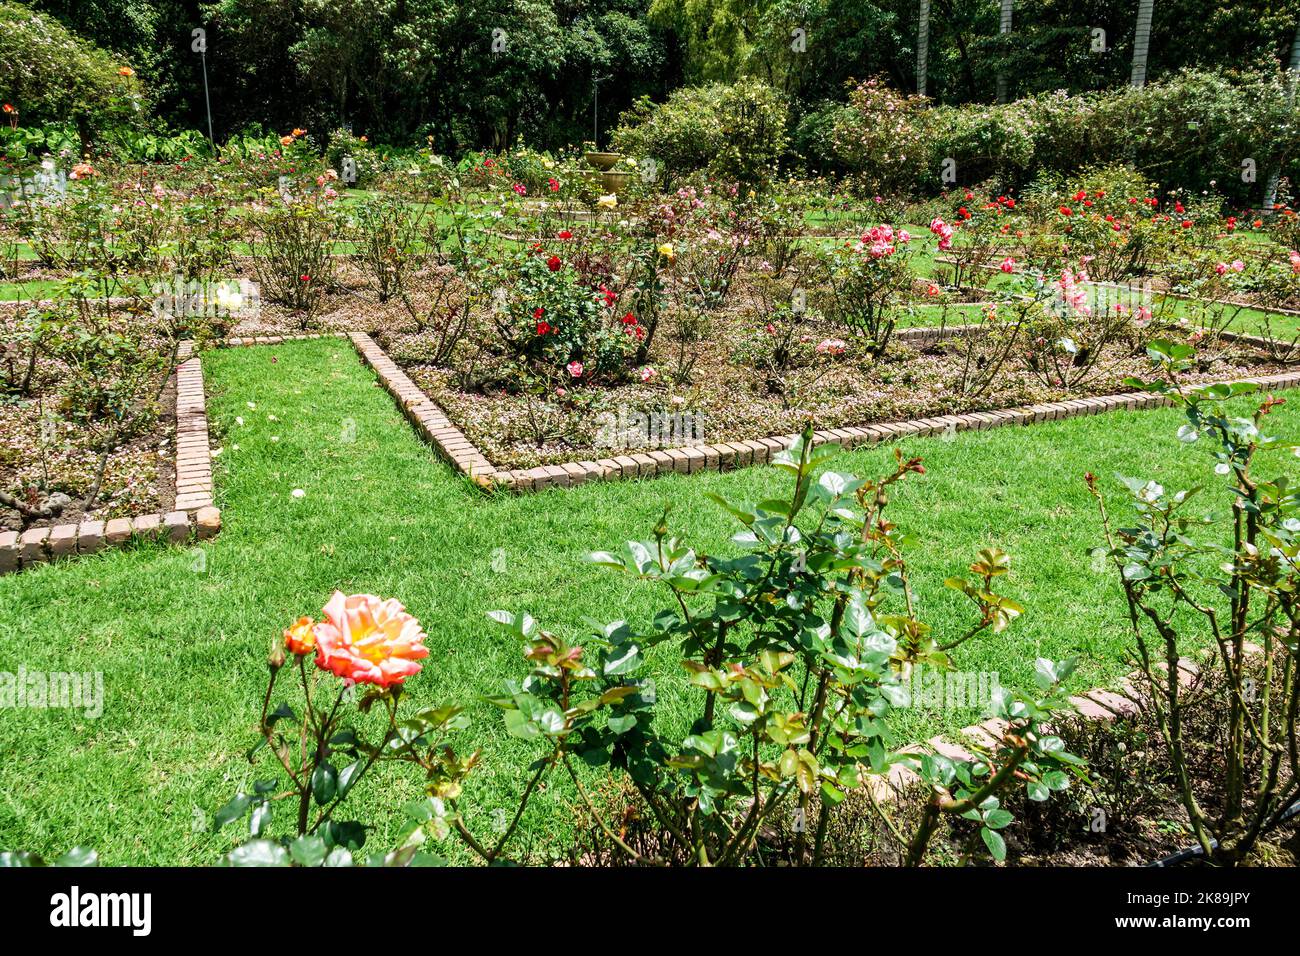 Bogota Colombia, Engativa Calle 63 Jardin Botanico de Bogota¡ Jose Celestino Mutis Giardino Botanico, mostra mostre collezione piante rose fiore Foto Stock